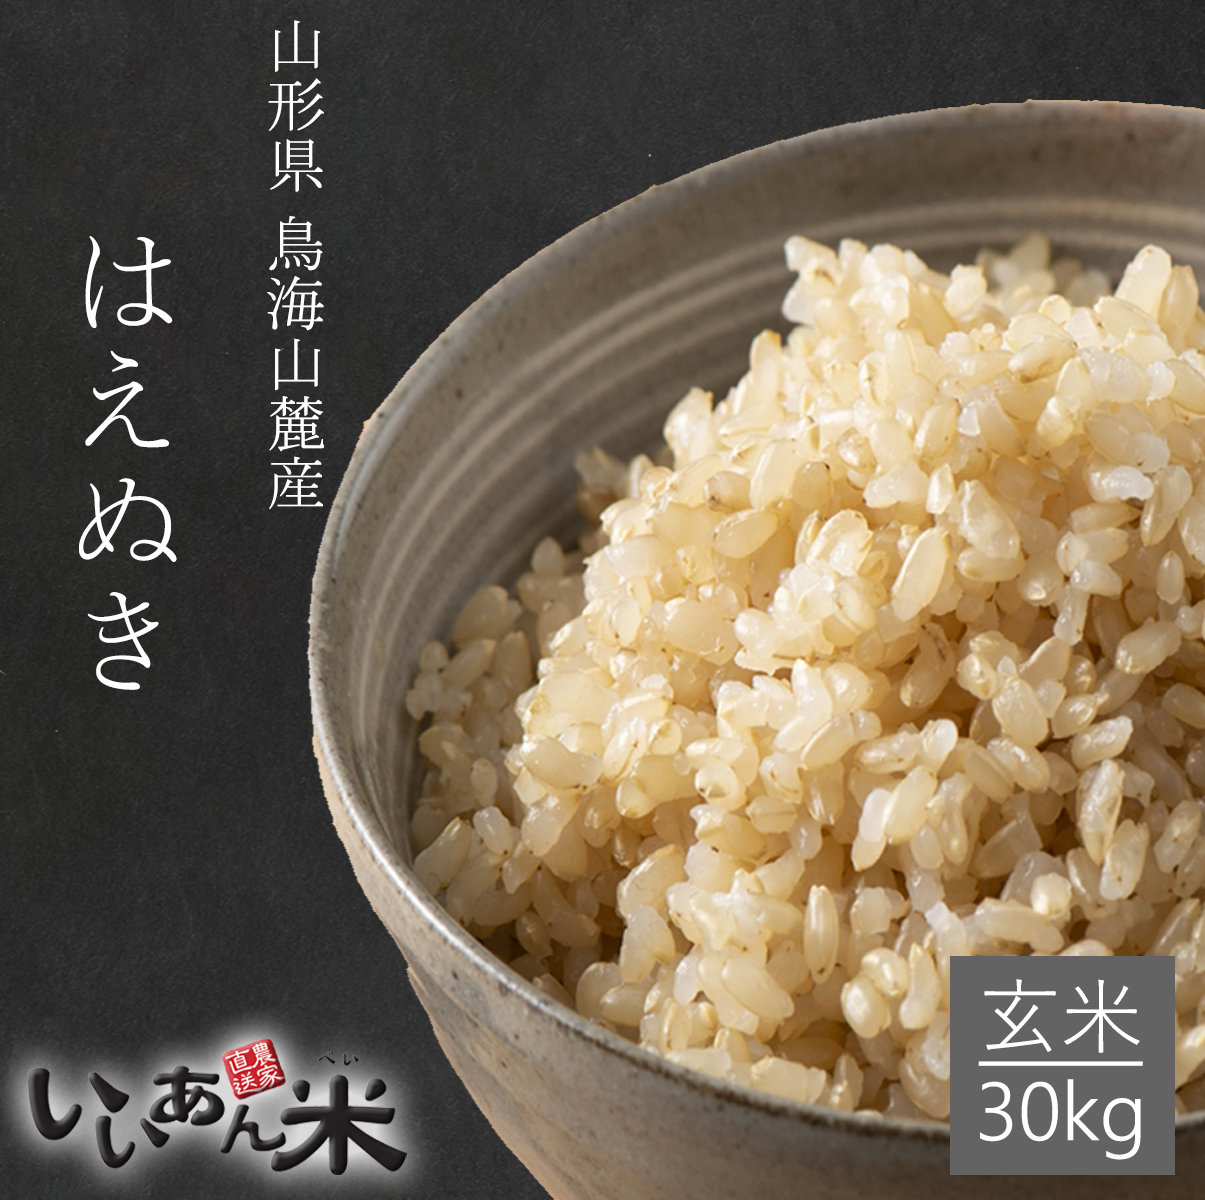 玄米 10kg 送料無料 国内産 『農家直送米(玄米)玄米色彩選別済み』